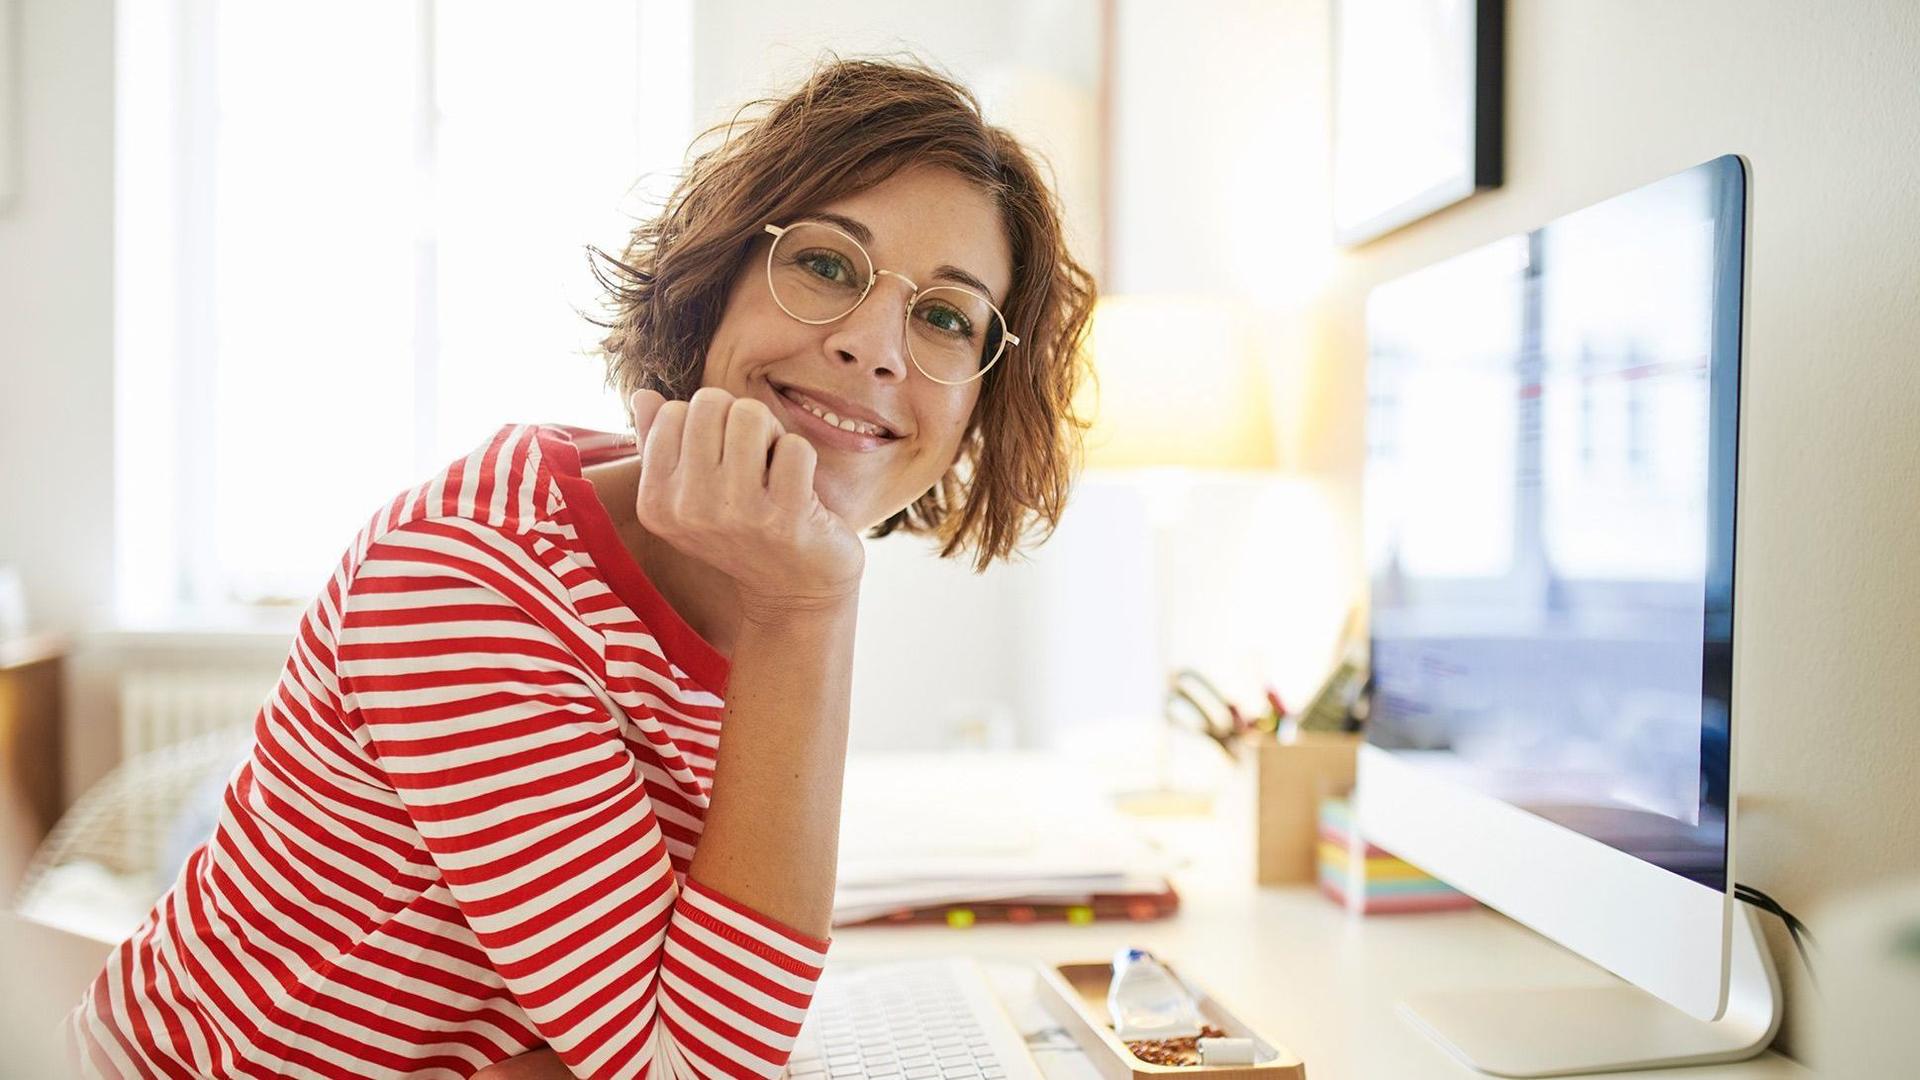 Eine junge Frau sitzt lächelnd an ihrem Schreibtisch vor einem Arbeitsbildschirm.